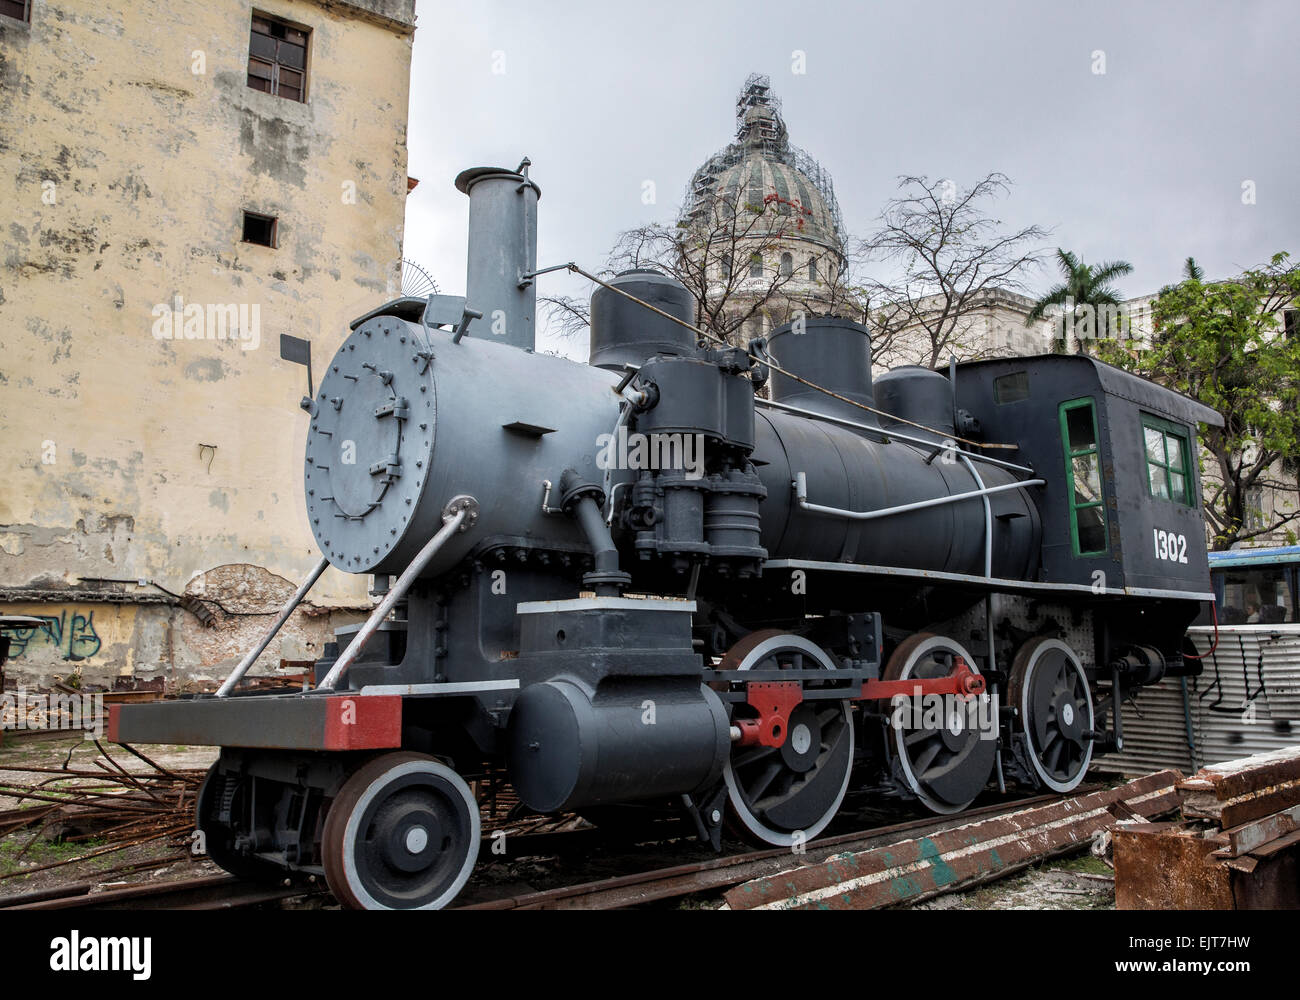 Vieux train à vapeur américain en cours de restauration en face de l'édifice du parlement Capitolio dans la vieille Havane à Cuba. Banque D'Images